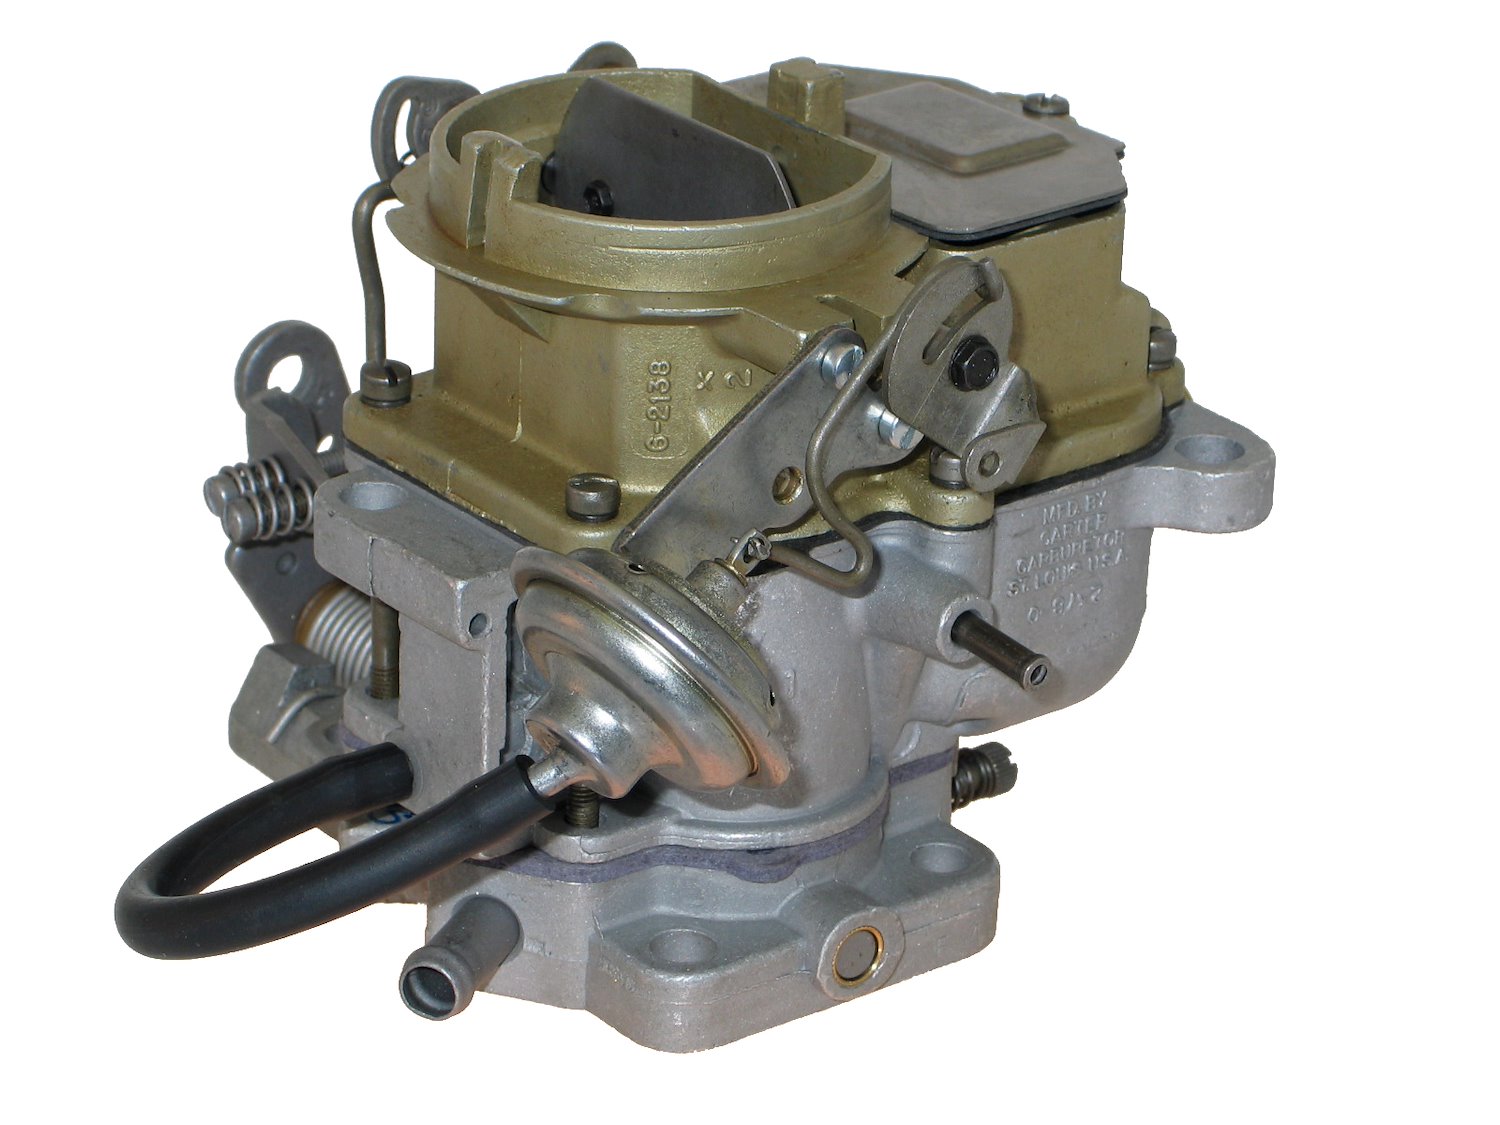 6-6249 Carter Remanufactured Carburetor, BBD-Style